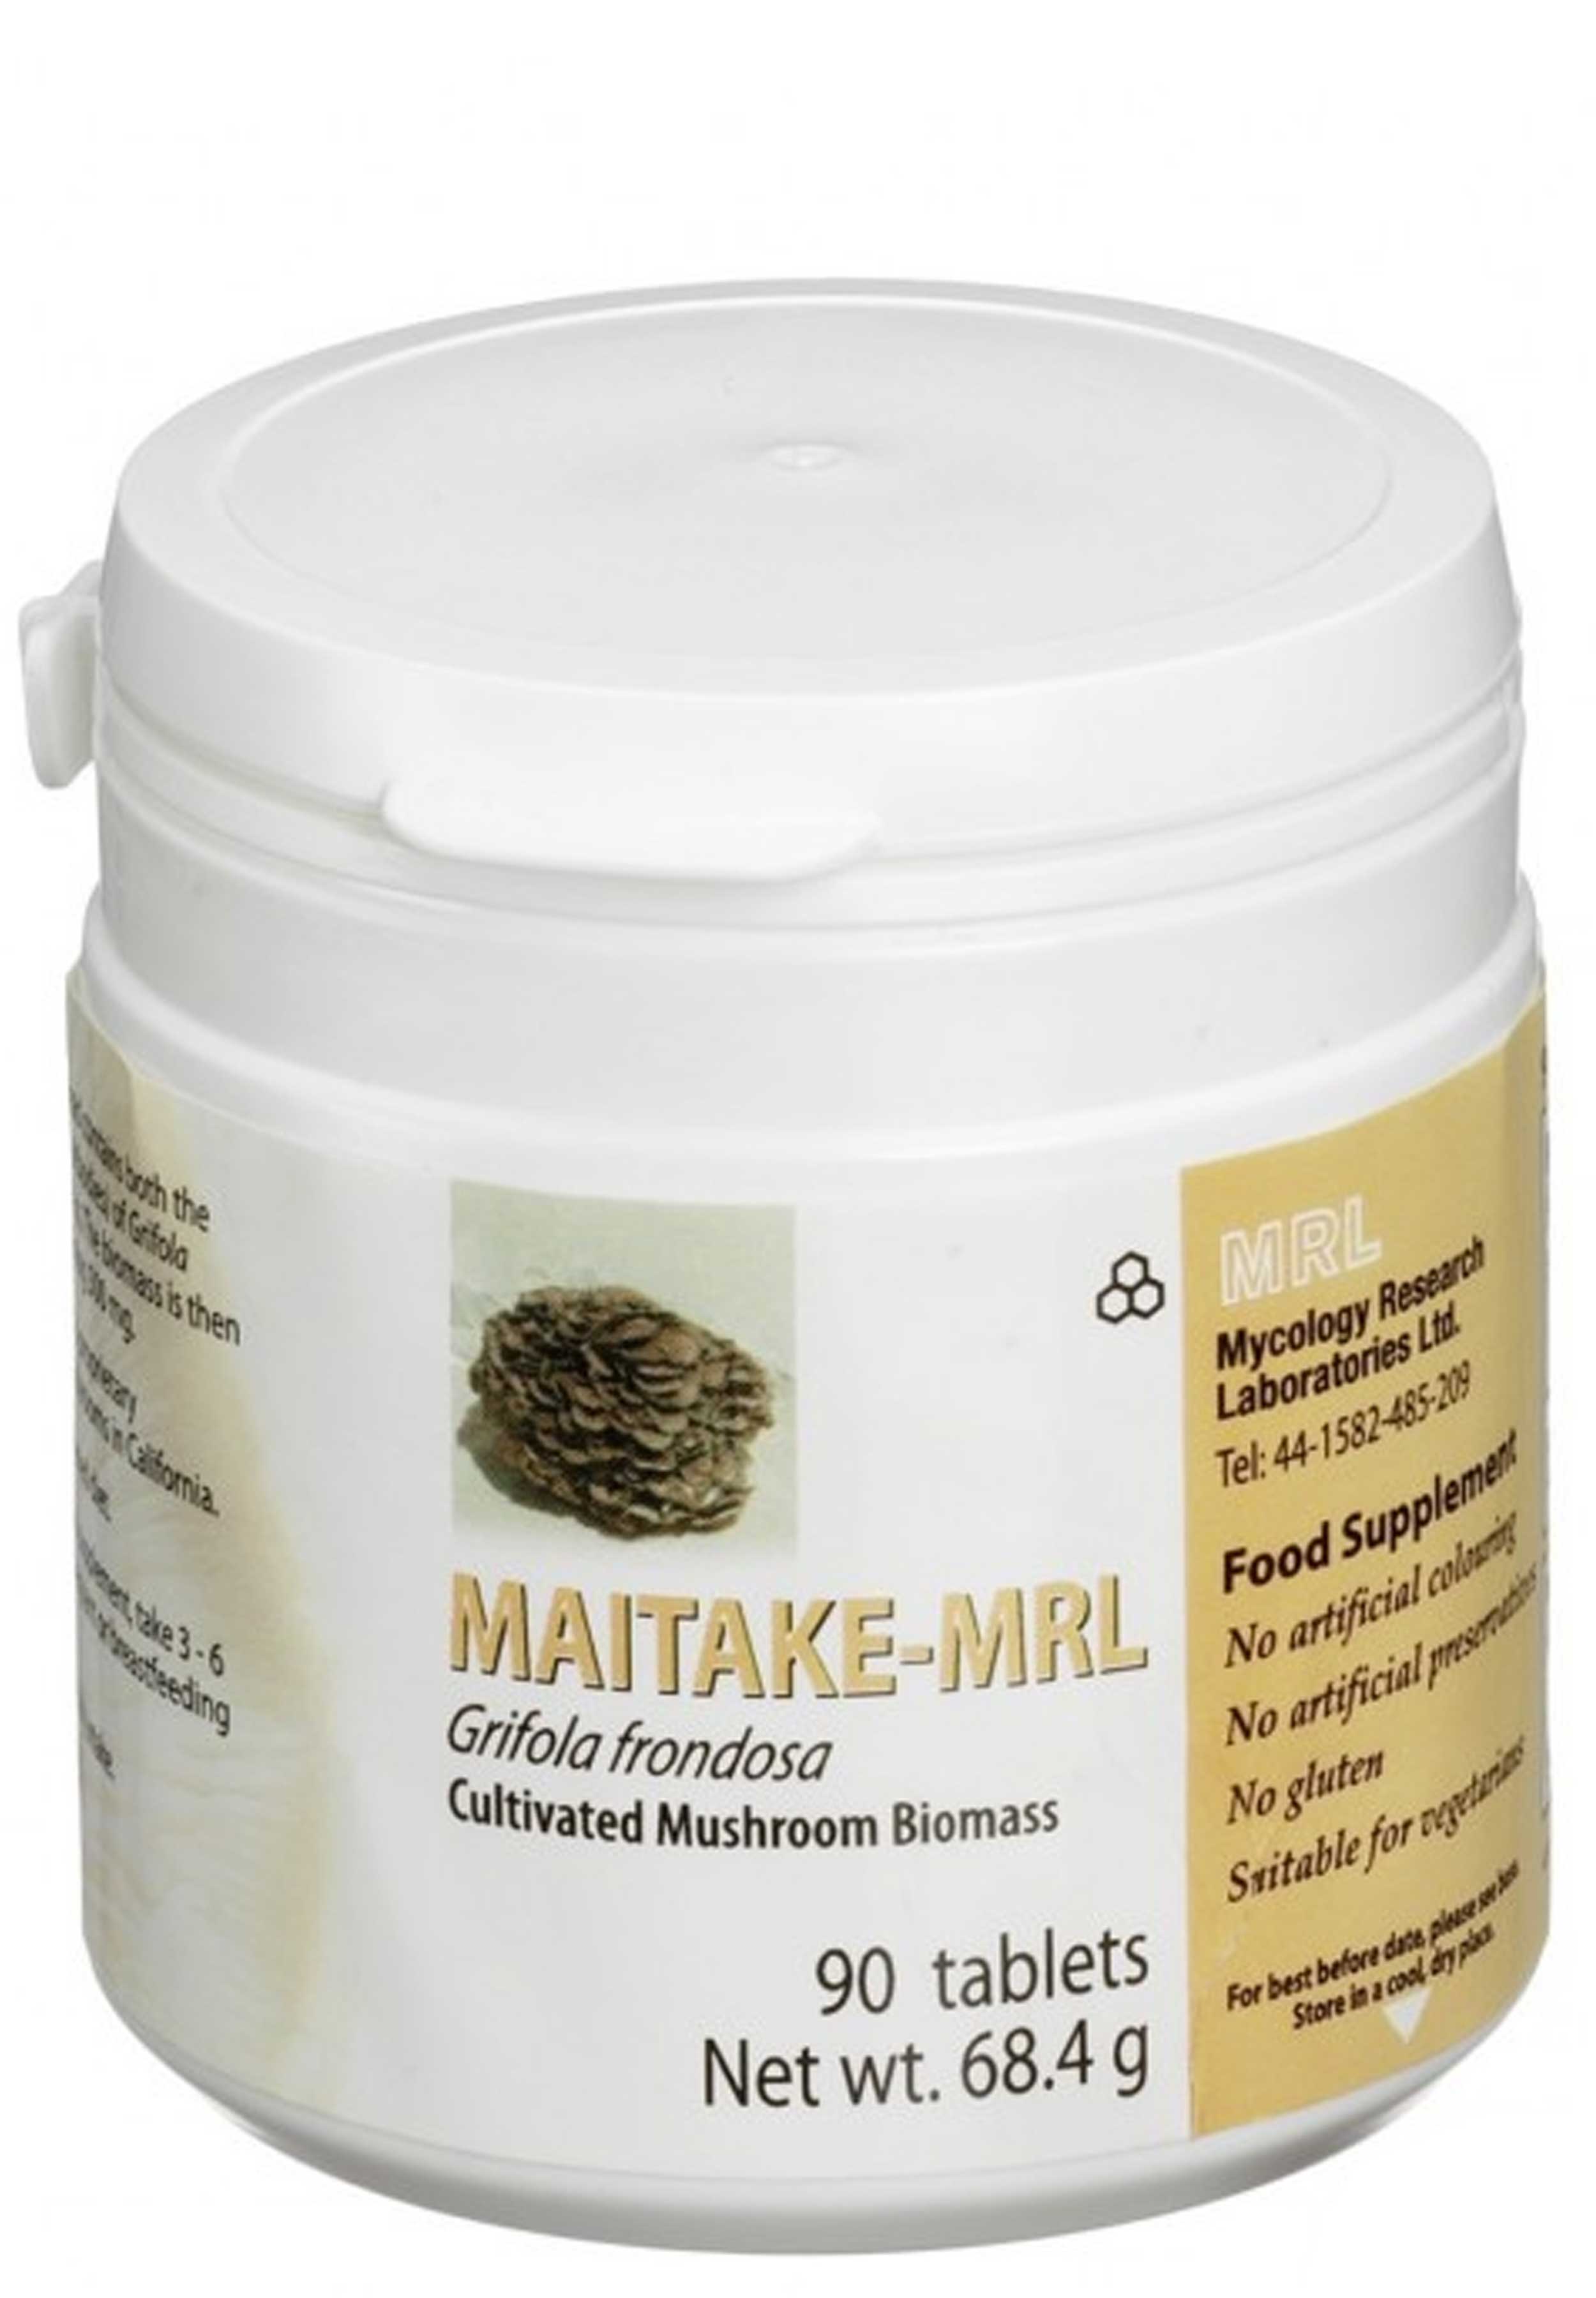 Mycology Research Laboratories Maitake-MRL